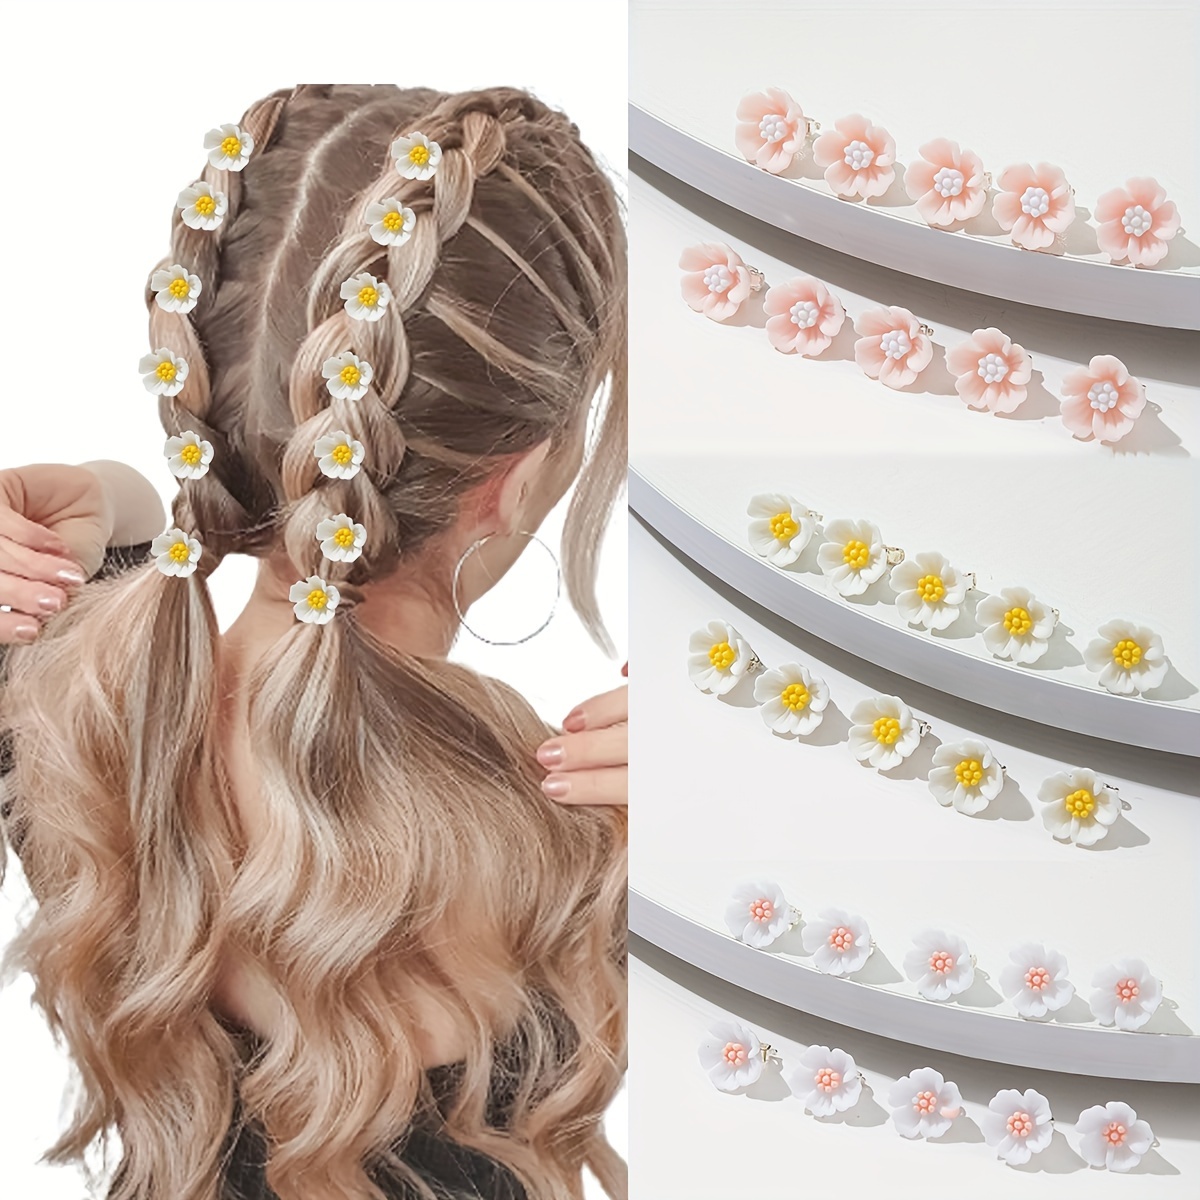 

10pcs Mini Cute Flower Hair Clips, Delicate Hair Accessories, Versatile For Beach & Wedding, Charming Hair Pins, Adorable Style